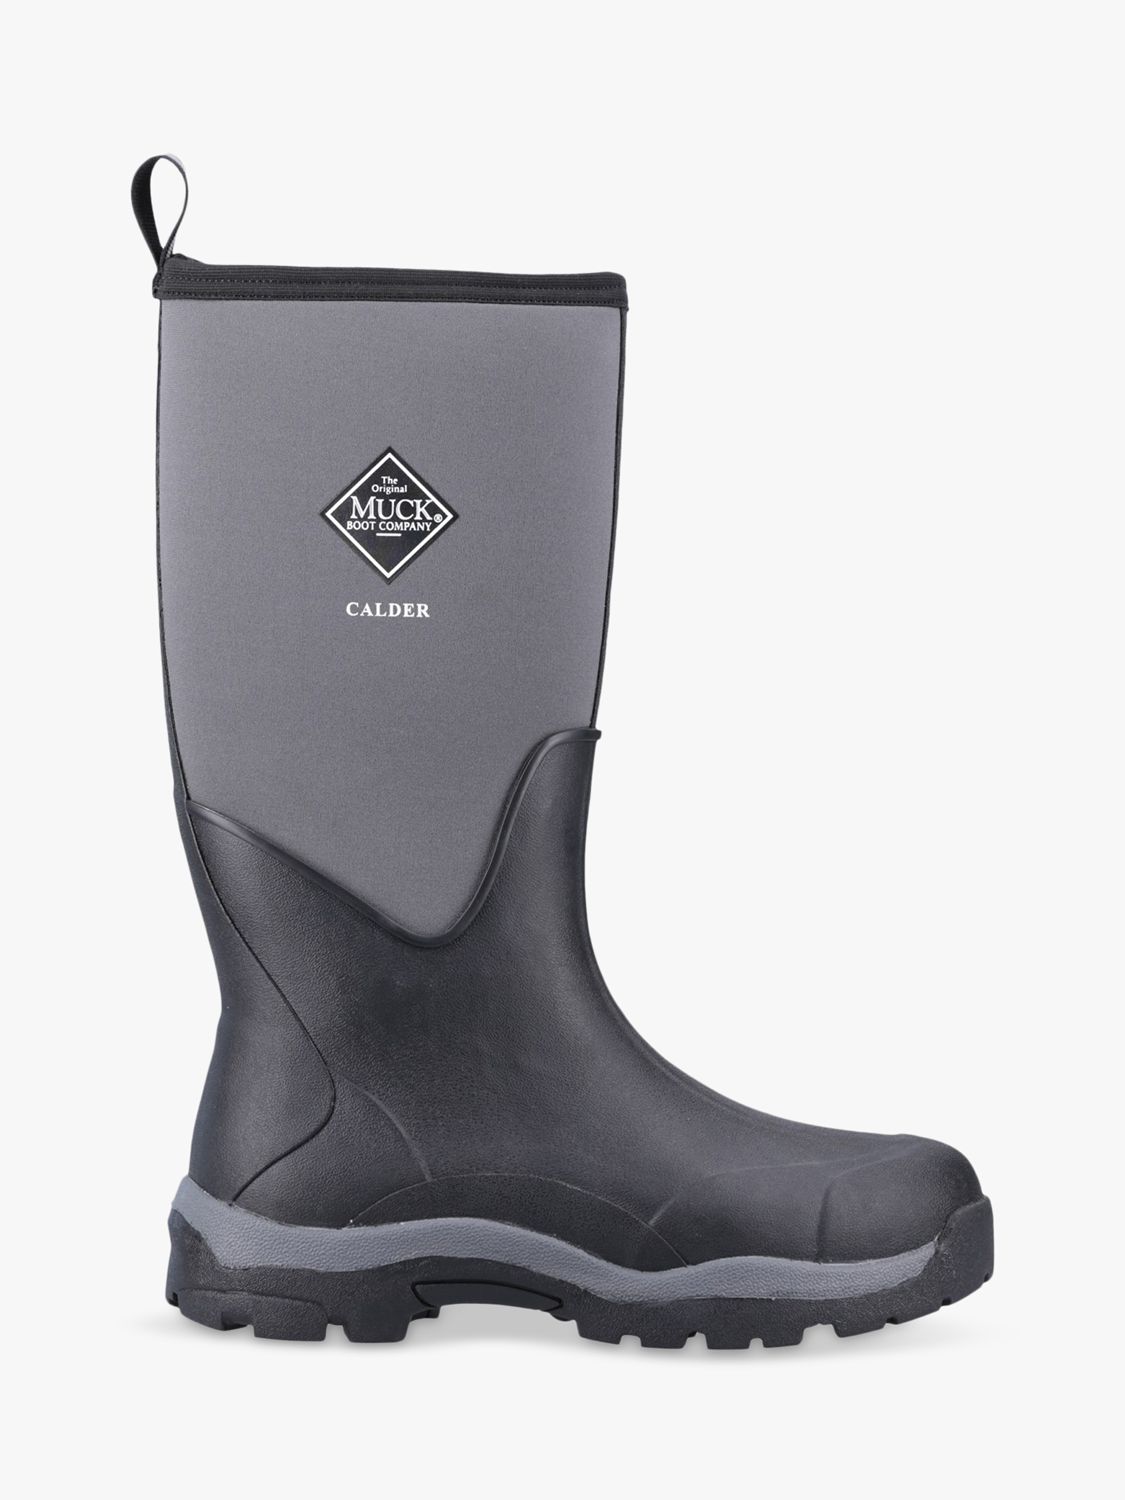 Muck Calder Tall Waterproof Wellington Boots, Black, 14